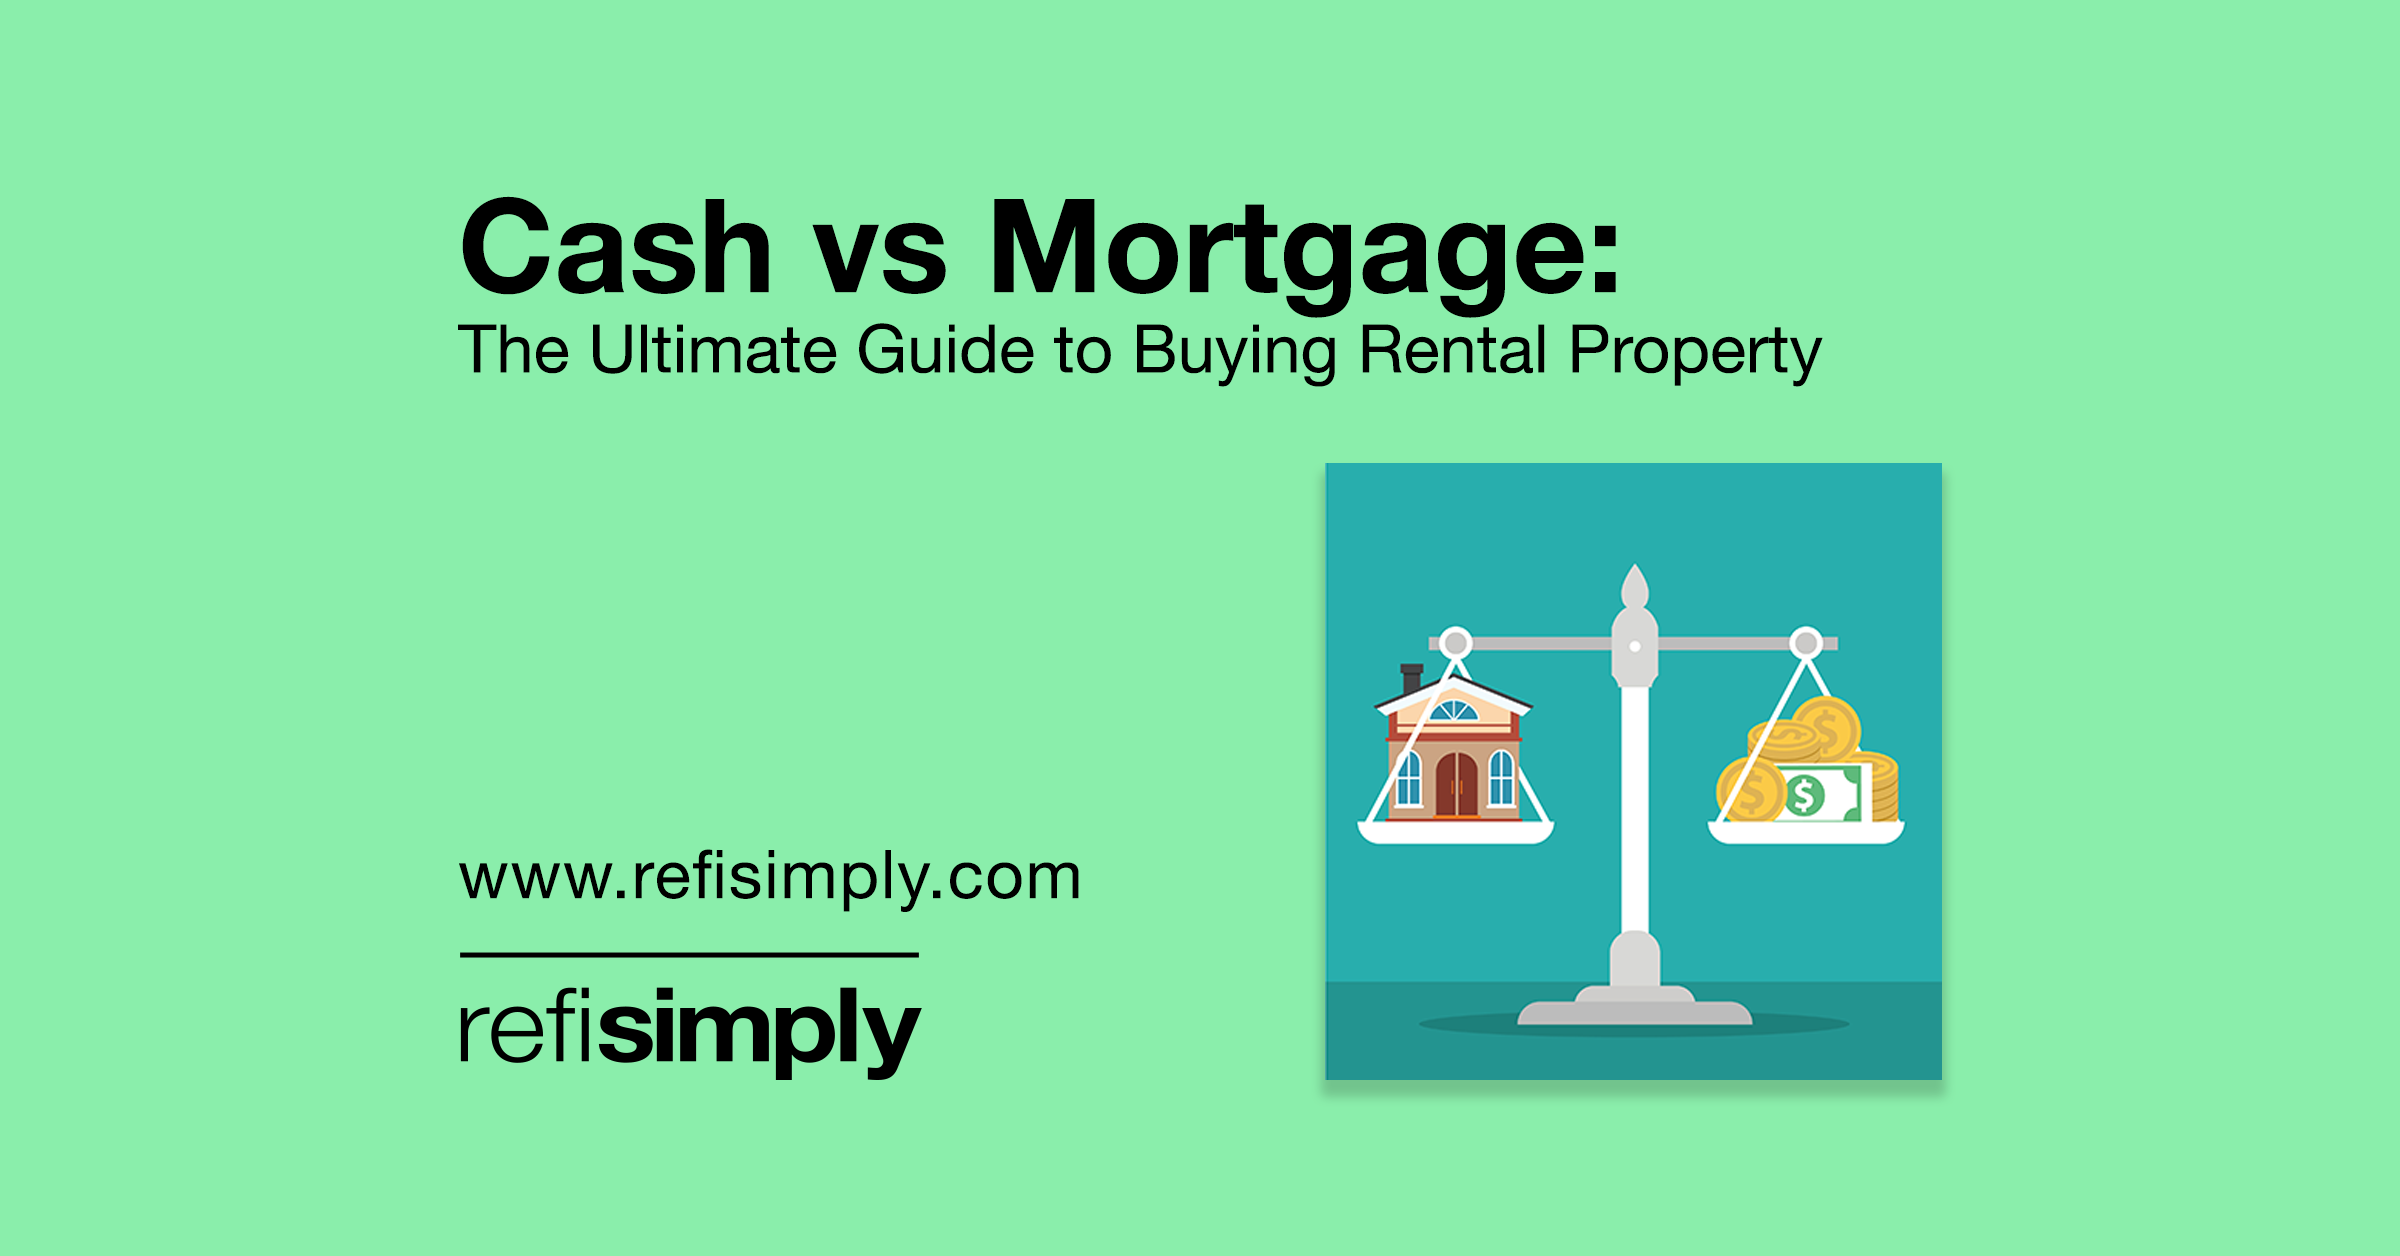 Cash vs Mortgage